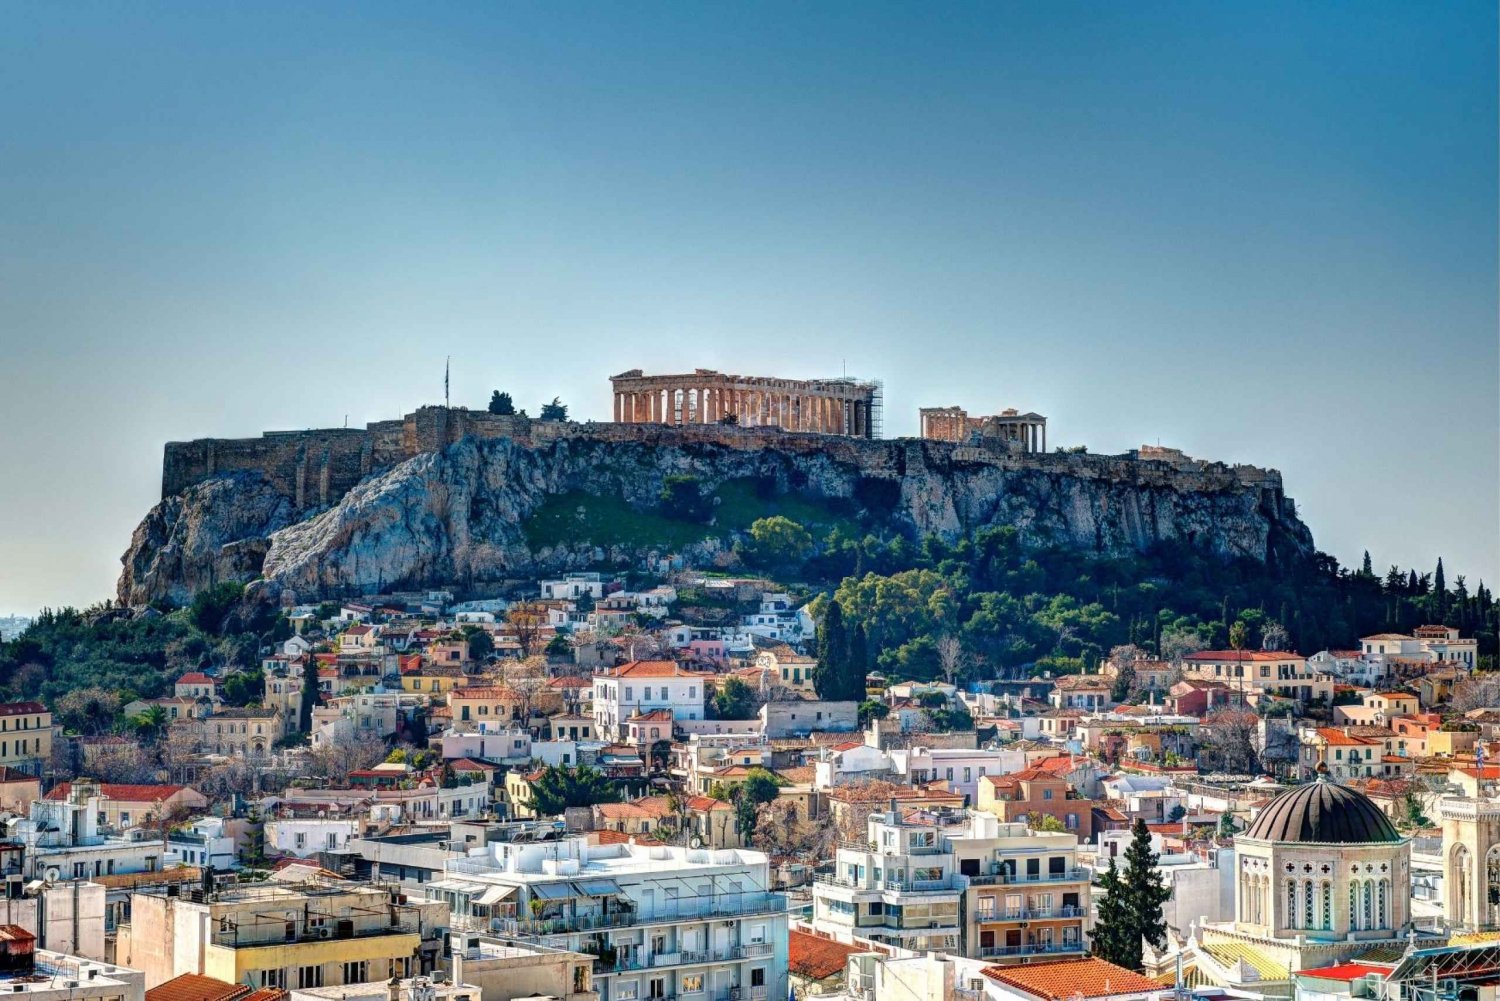 Athen: Tur til Akropolis og det antikke Athen